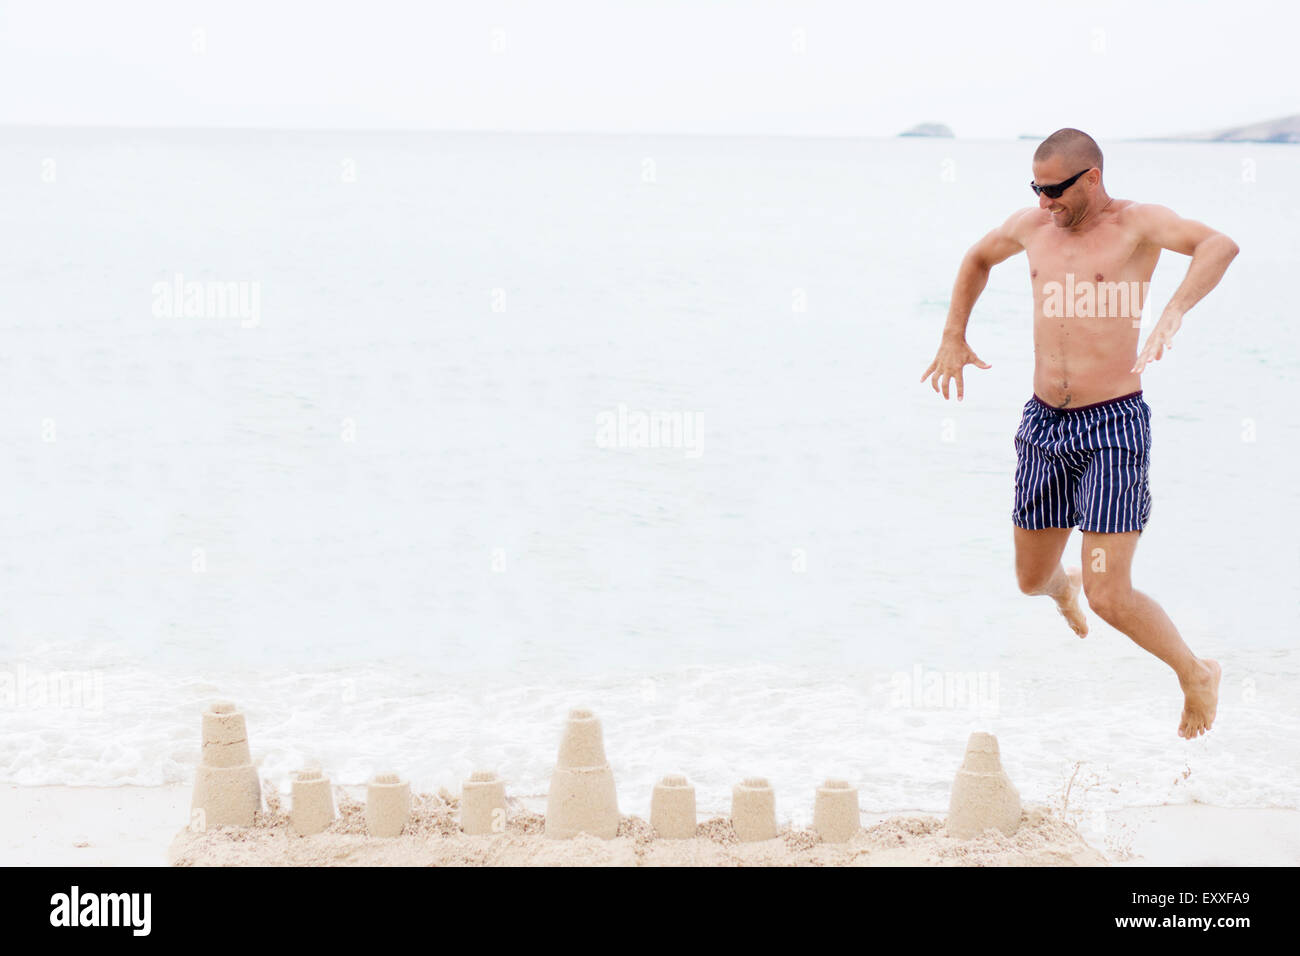 Mann springt am Strand über Sandburg, Meer im Hintergrund Stockfoto